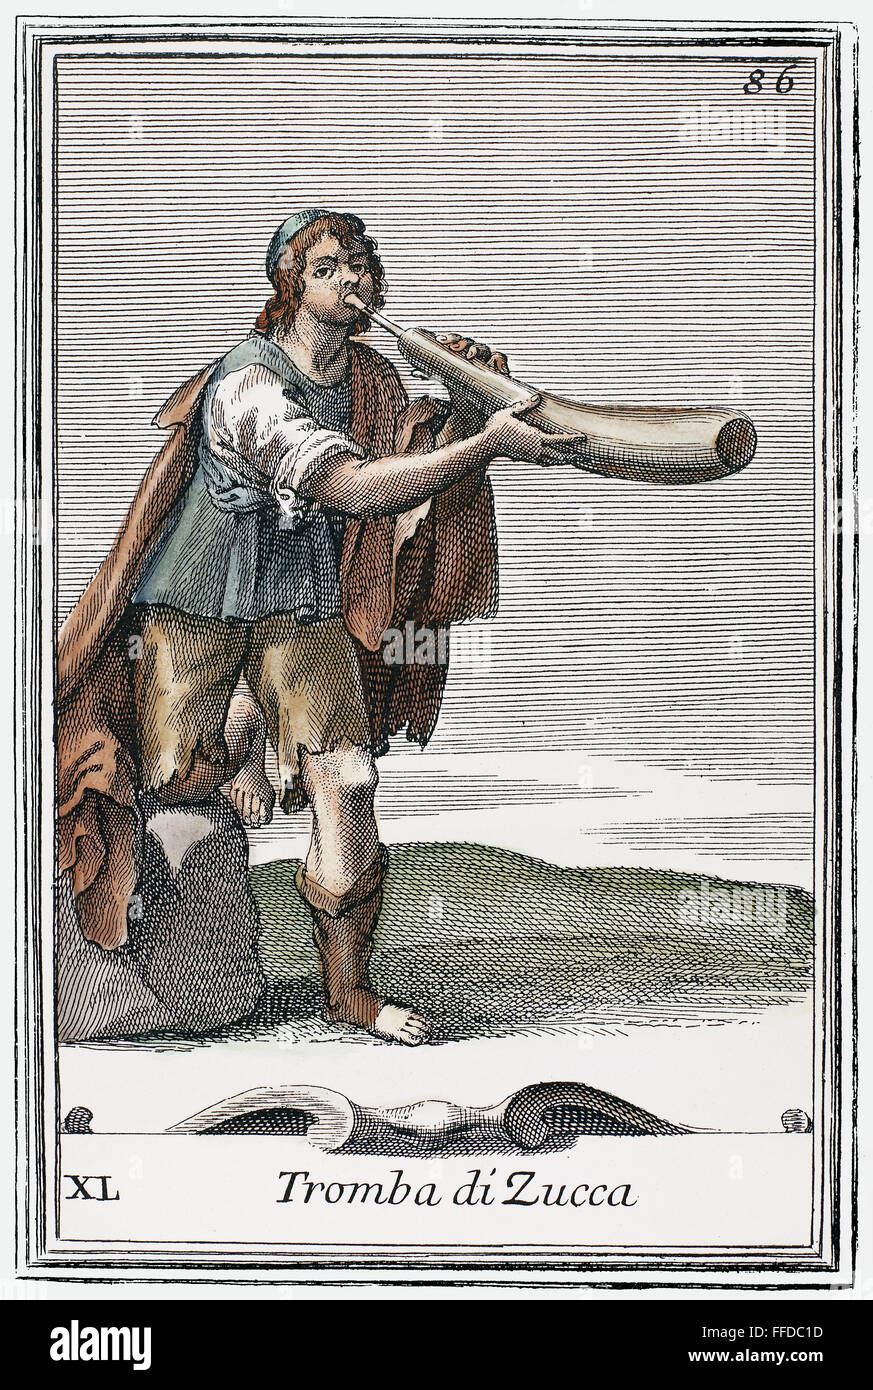 KNOCHENMARK-TROMPETE, 1723. NUM Knochenmark Trompete, hergestellt aus einer geschöpft, Knochenmark (Squash) in das ist eingefügt, ein Single-Reed-Rohr. Kupfer, Gravur, 1723, durch Arnold van Westerhout. Stockfoto